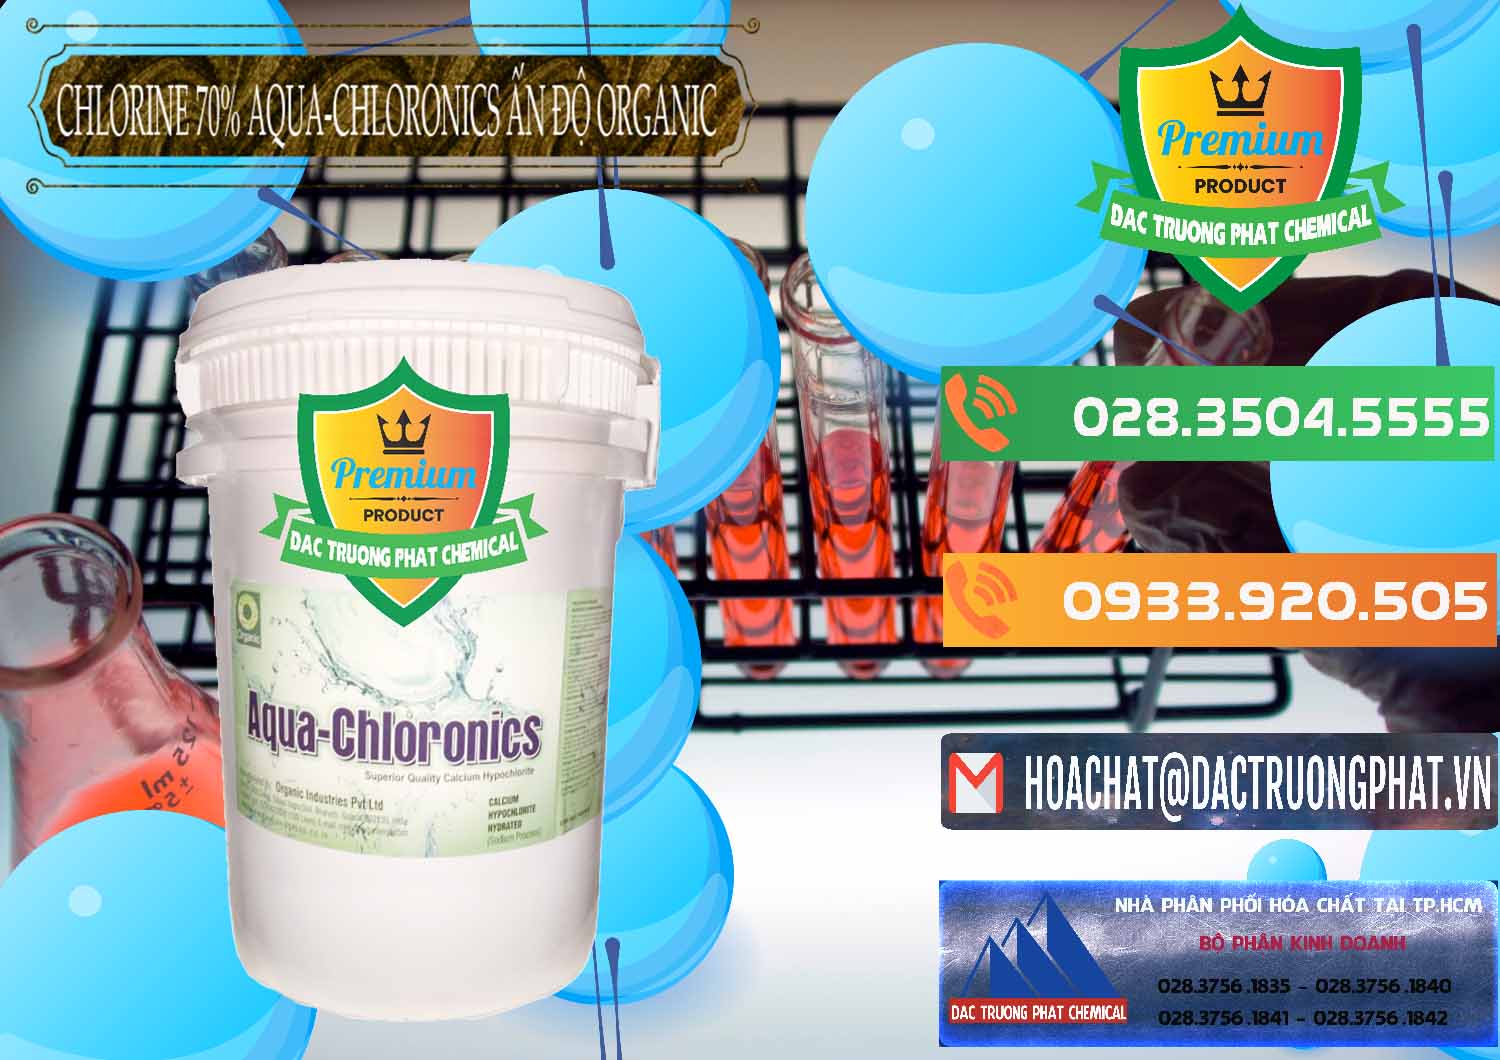 Đơn vị nhập khẩu ( bán ) Chlorine – Clorin 70% Aqua-Chloronics Ấn Độ Organic India - 0211 - Cty phân phối & cung cấp hóa chất tại TP.HCM - hoachatxulynuoc.com.vn